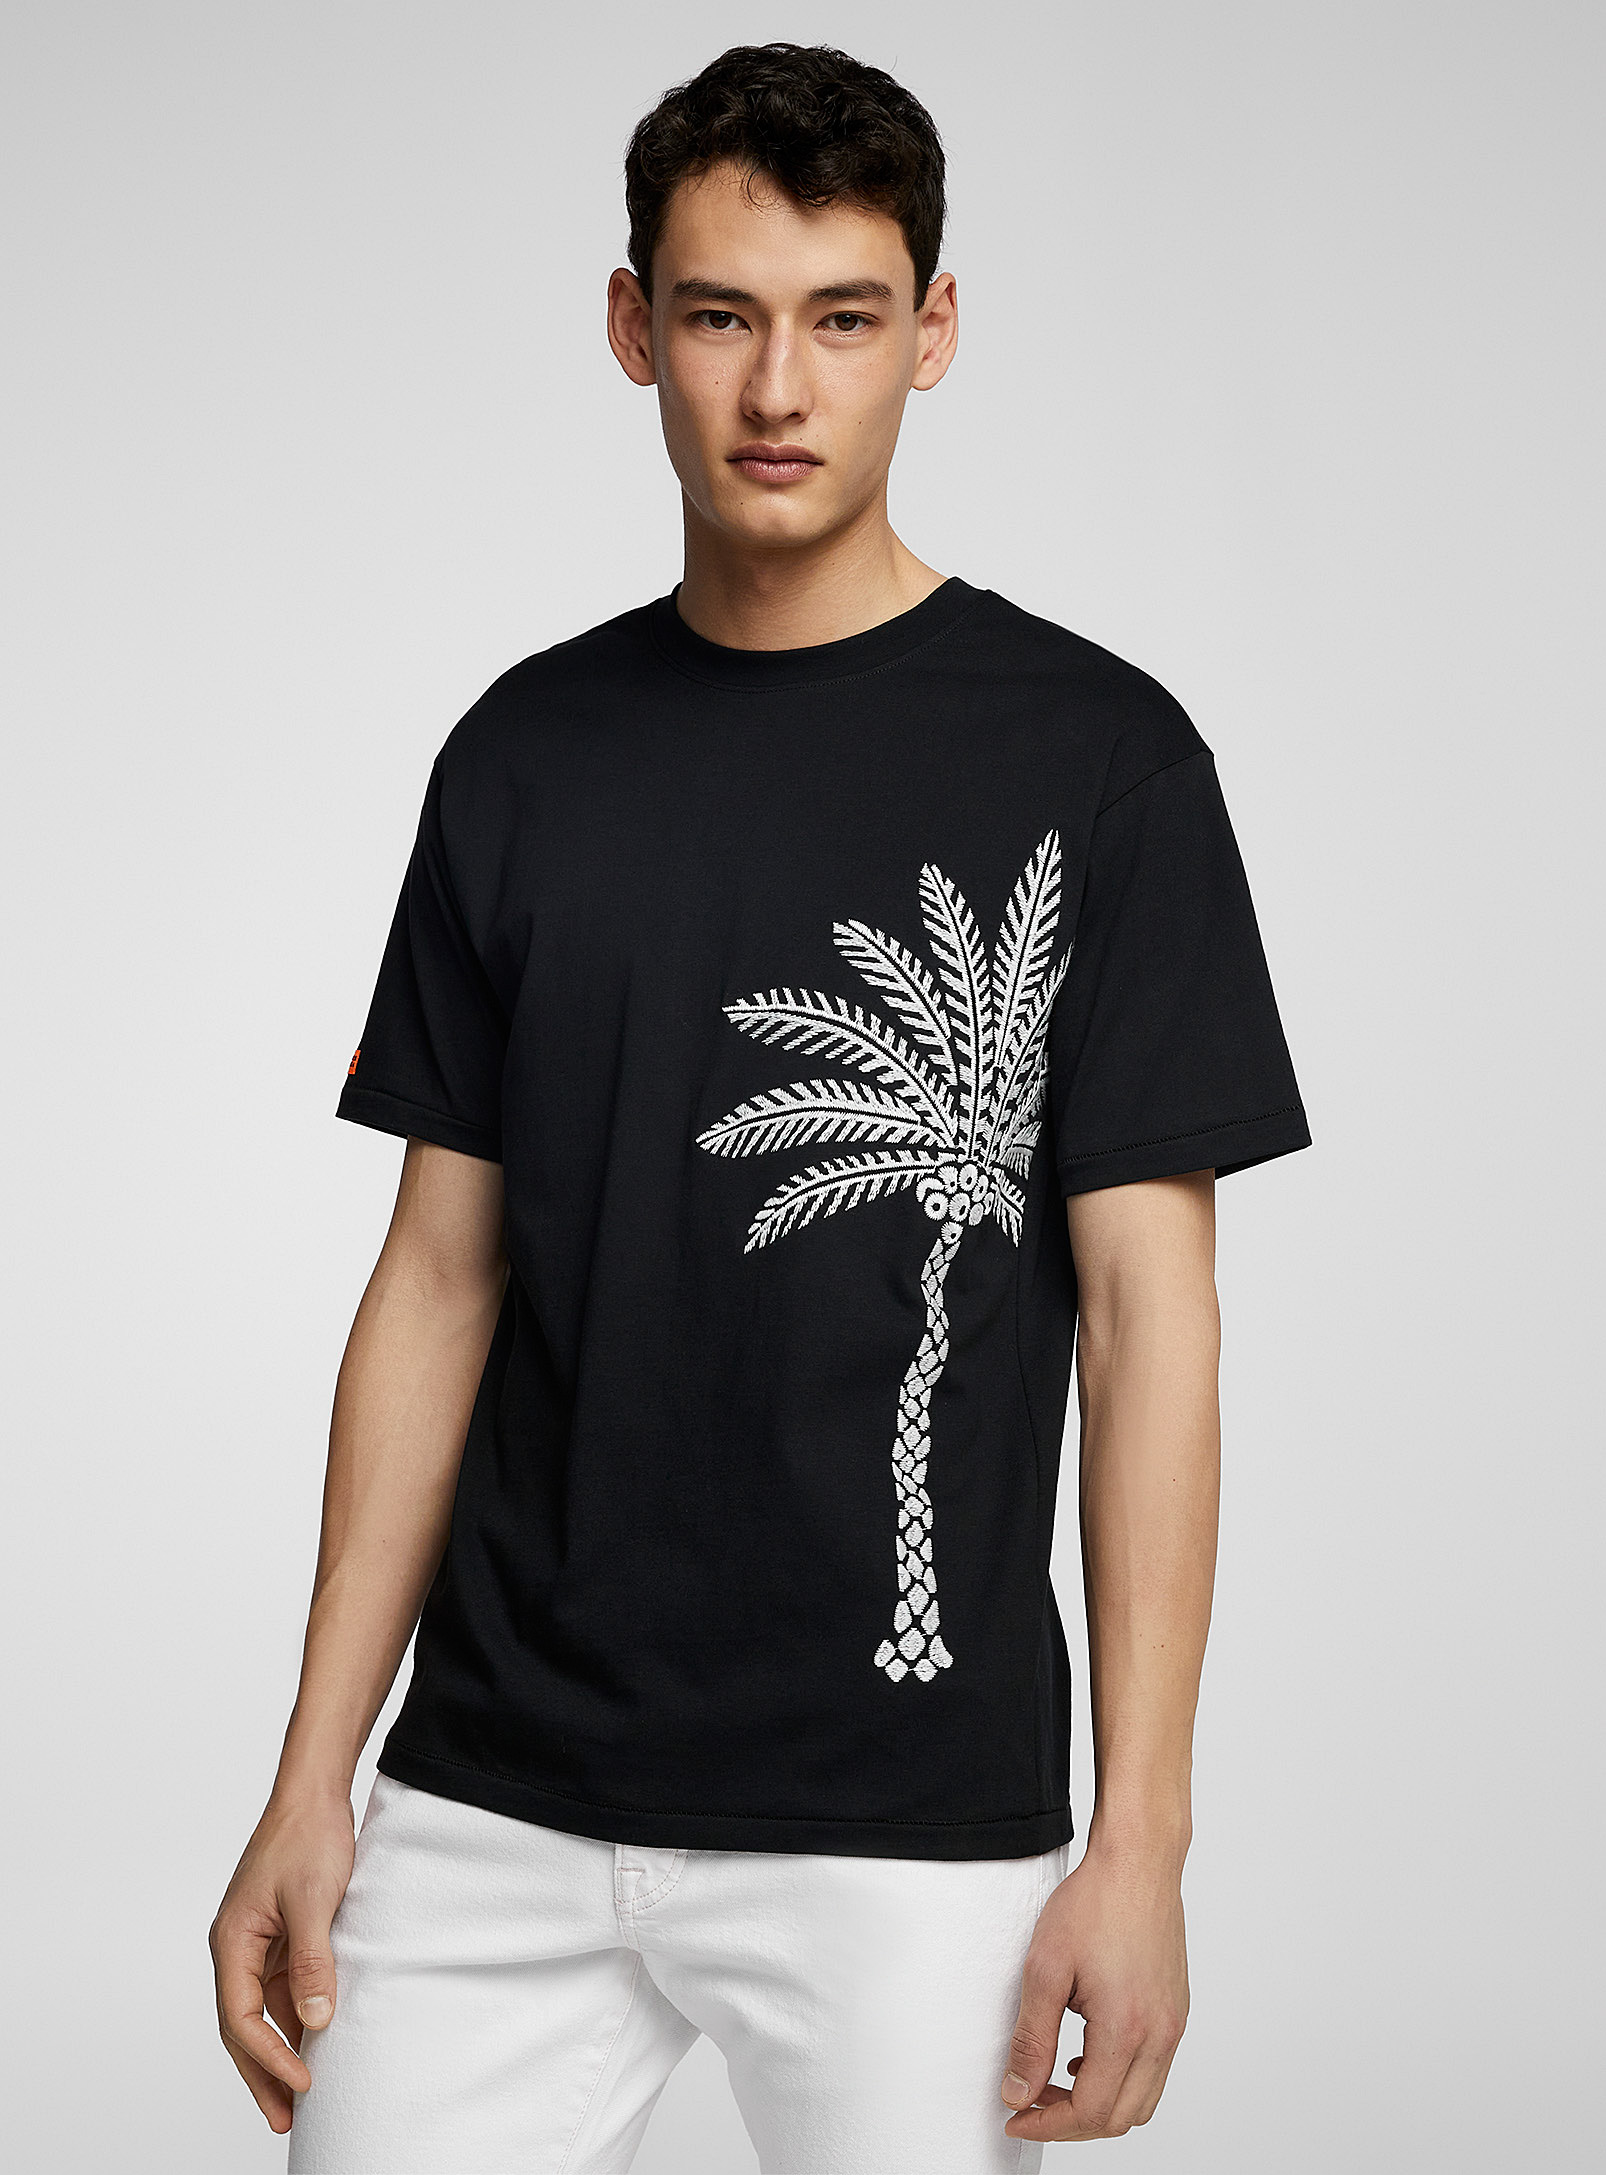 Scotch & Soda - Le t-shirt broderie palmier